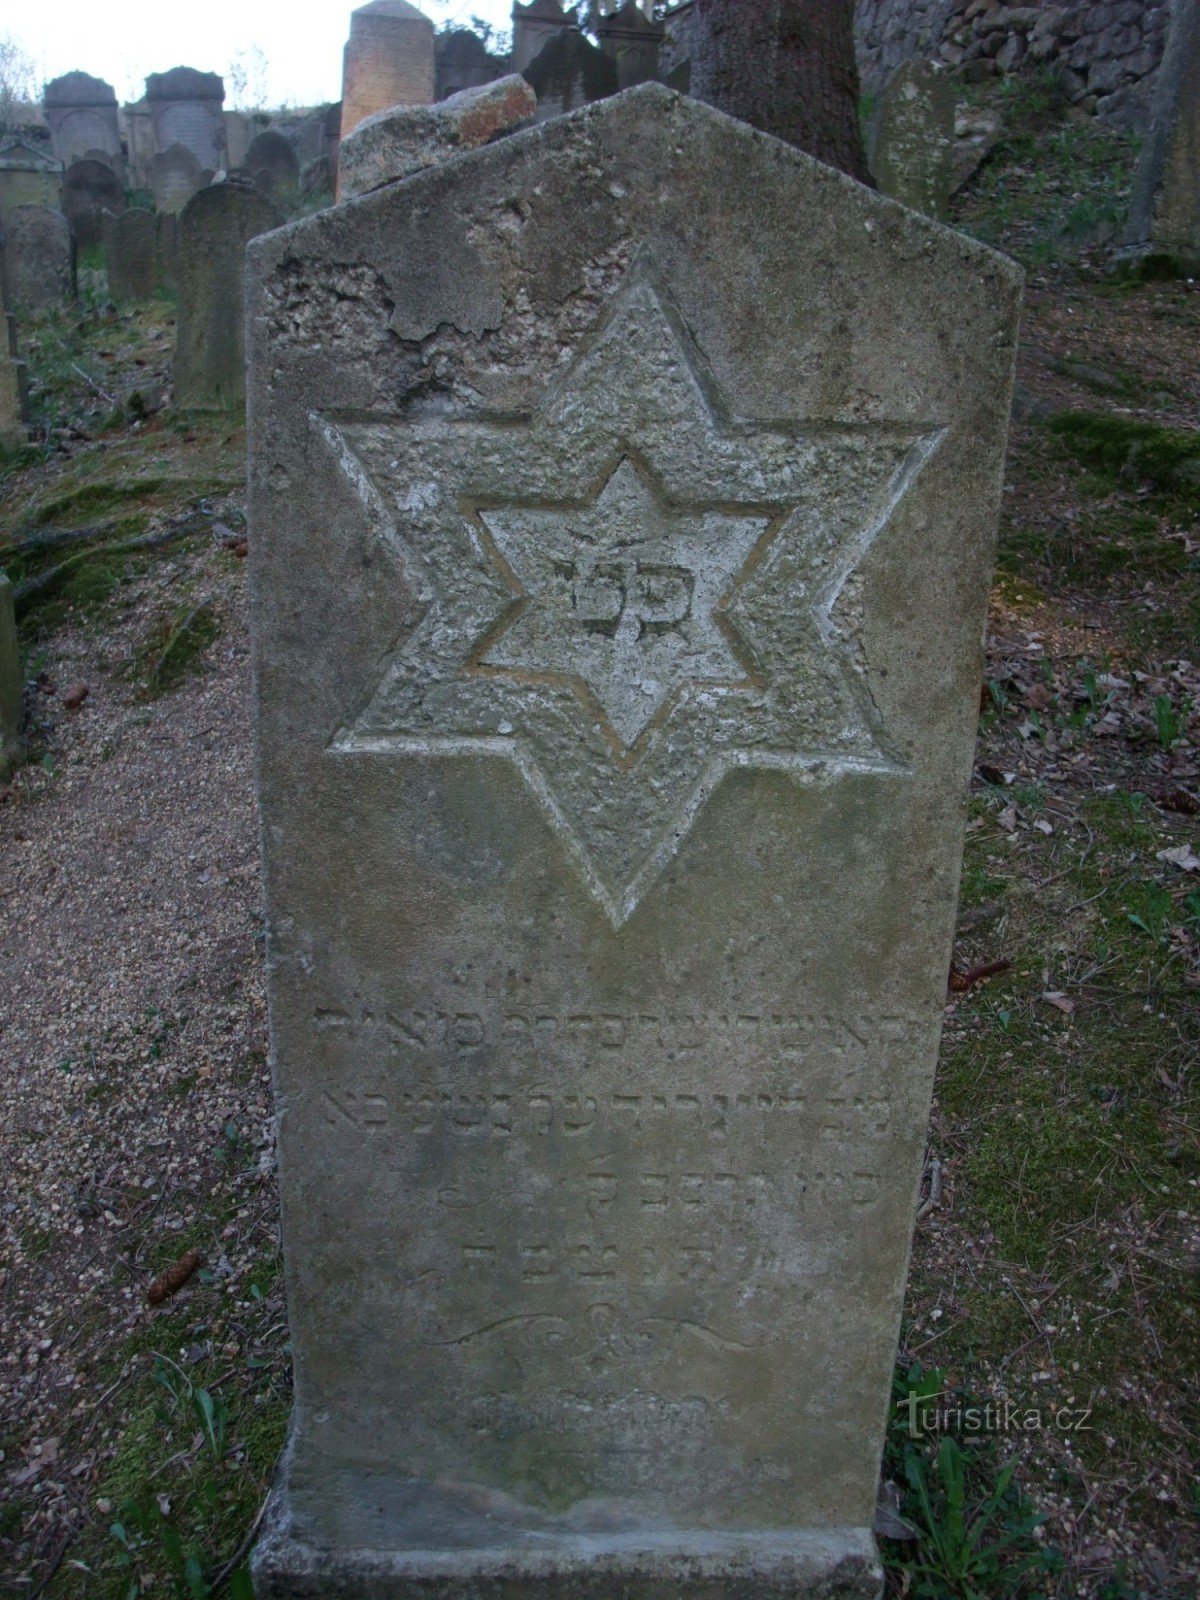 Εβραϊκό νεκροταφείο στο Úbočí